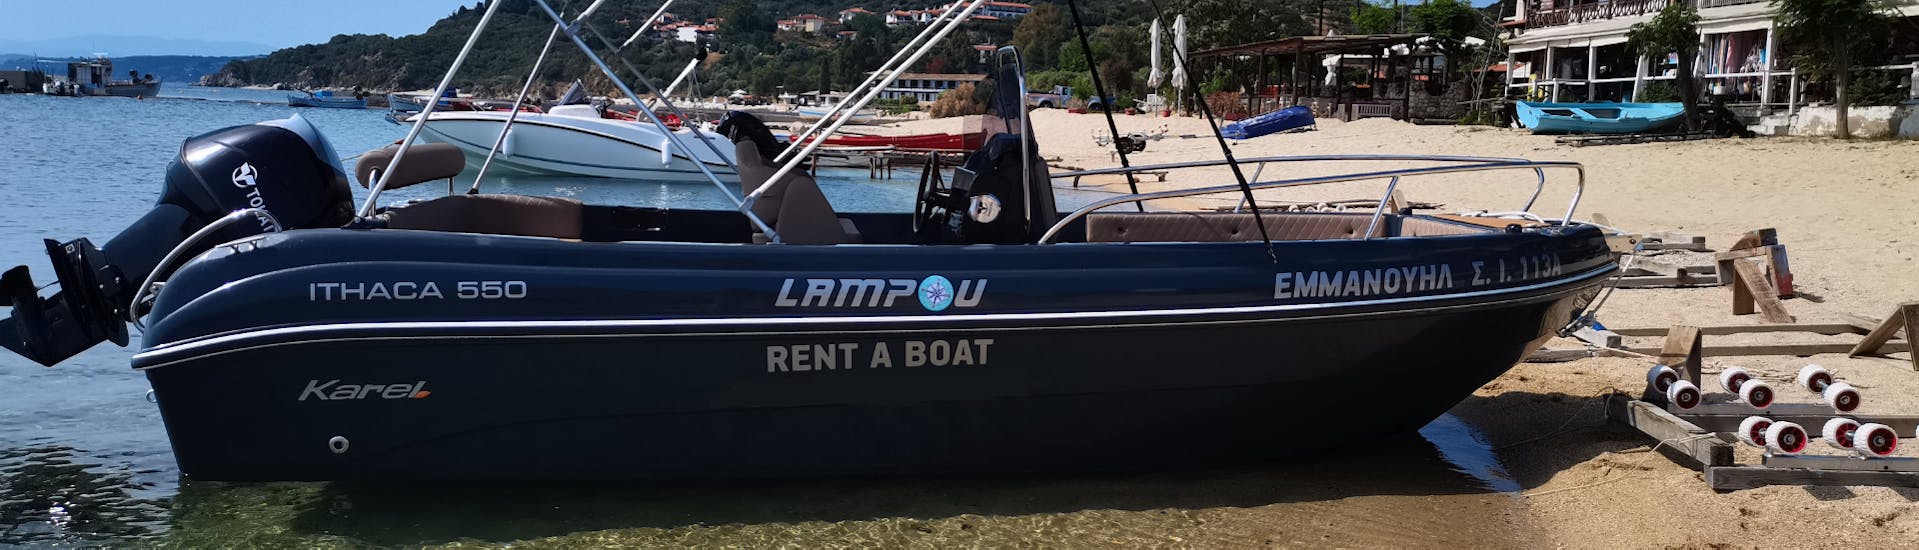 Unser Boot für 8 Personen wartet auf Euch für den Bootsverleih in Ouranoupoli (bis zu 8 Personen) - Ammouliani & Drenia Inseln.